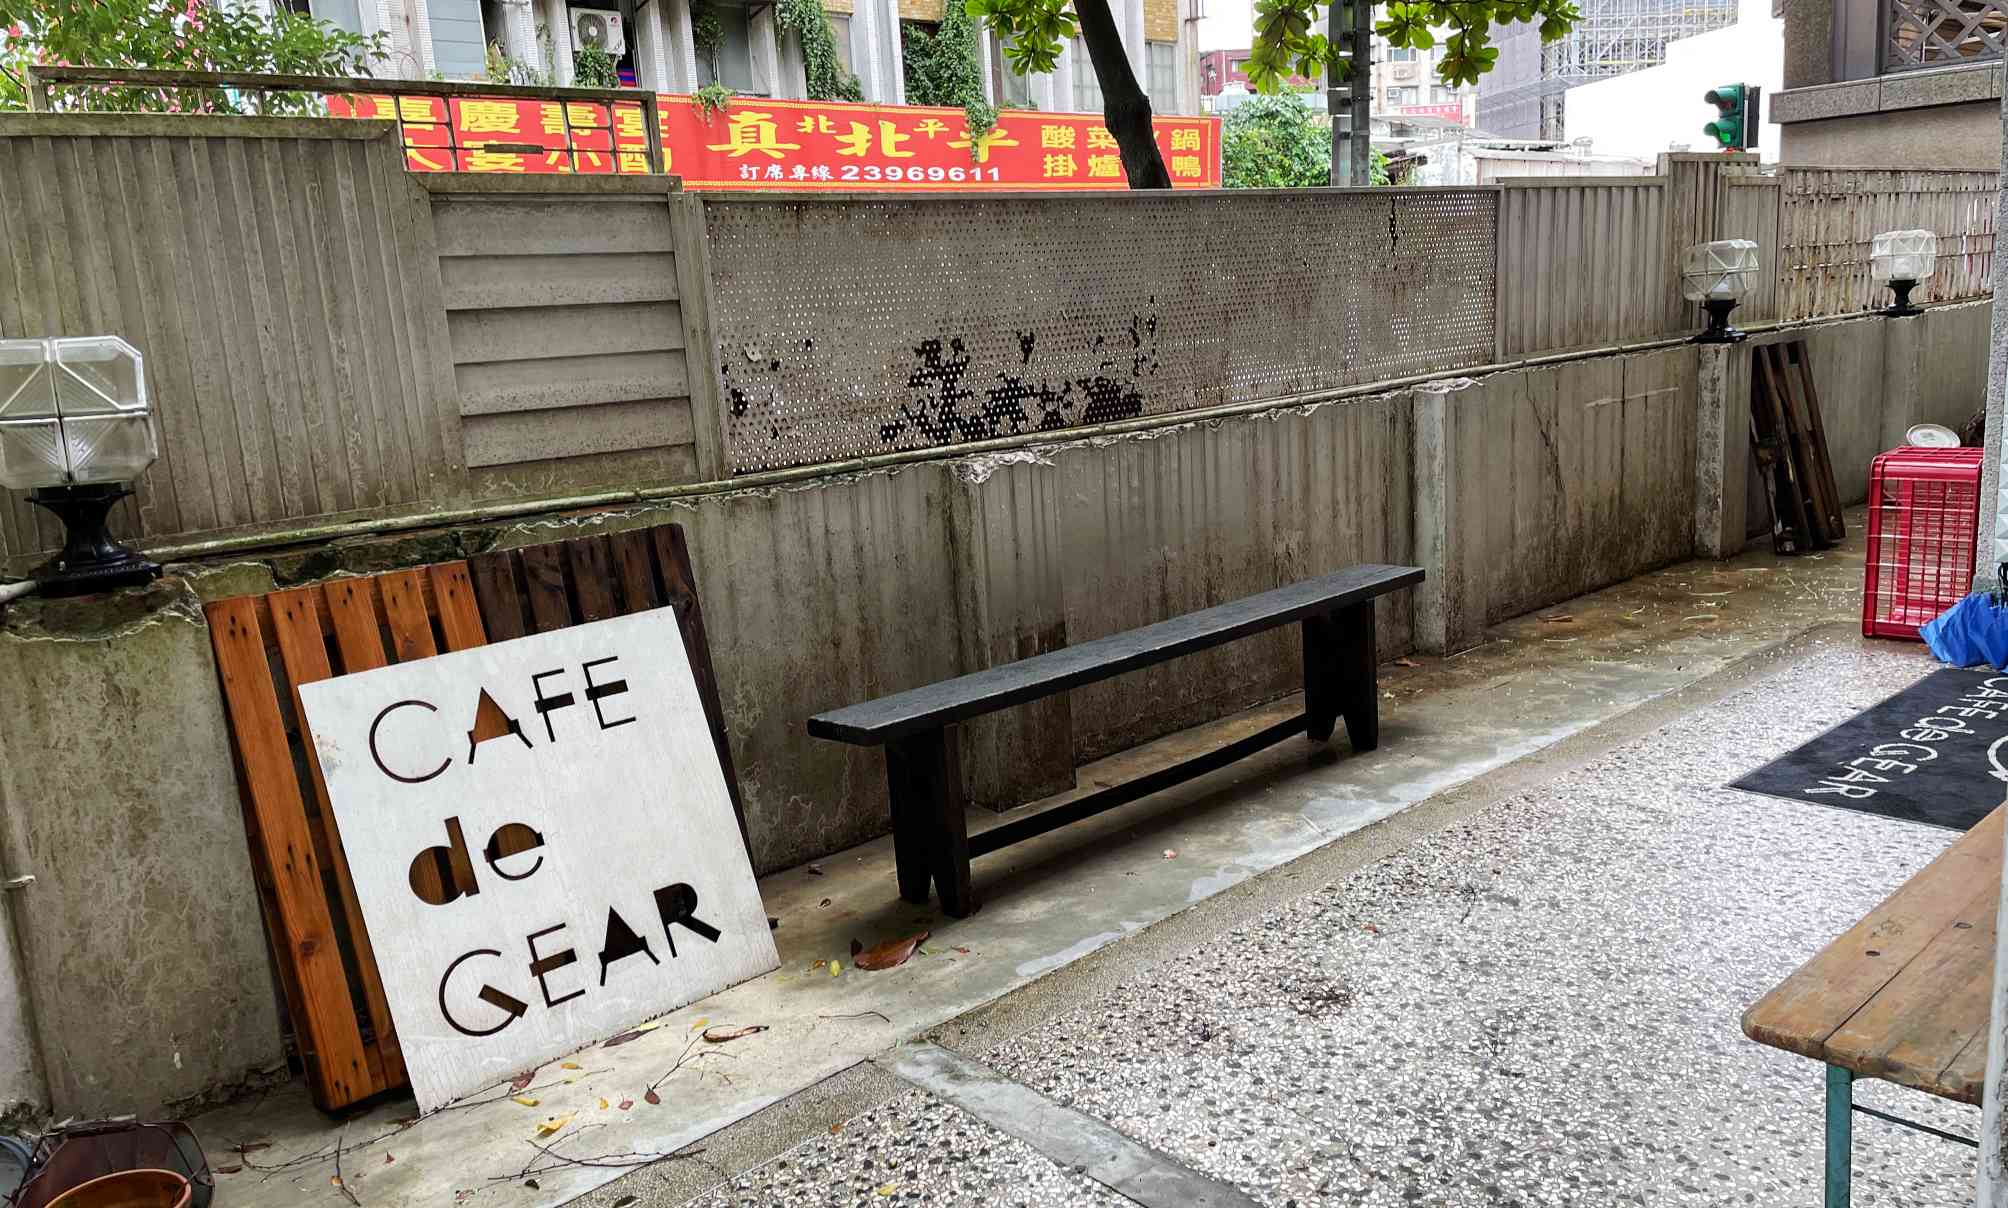 中正紀念堂美食, Cafe de Gear菜單, Cafe de Gear評價, Cafe de Gear訂位